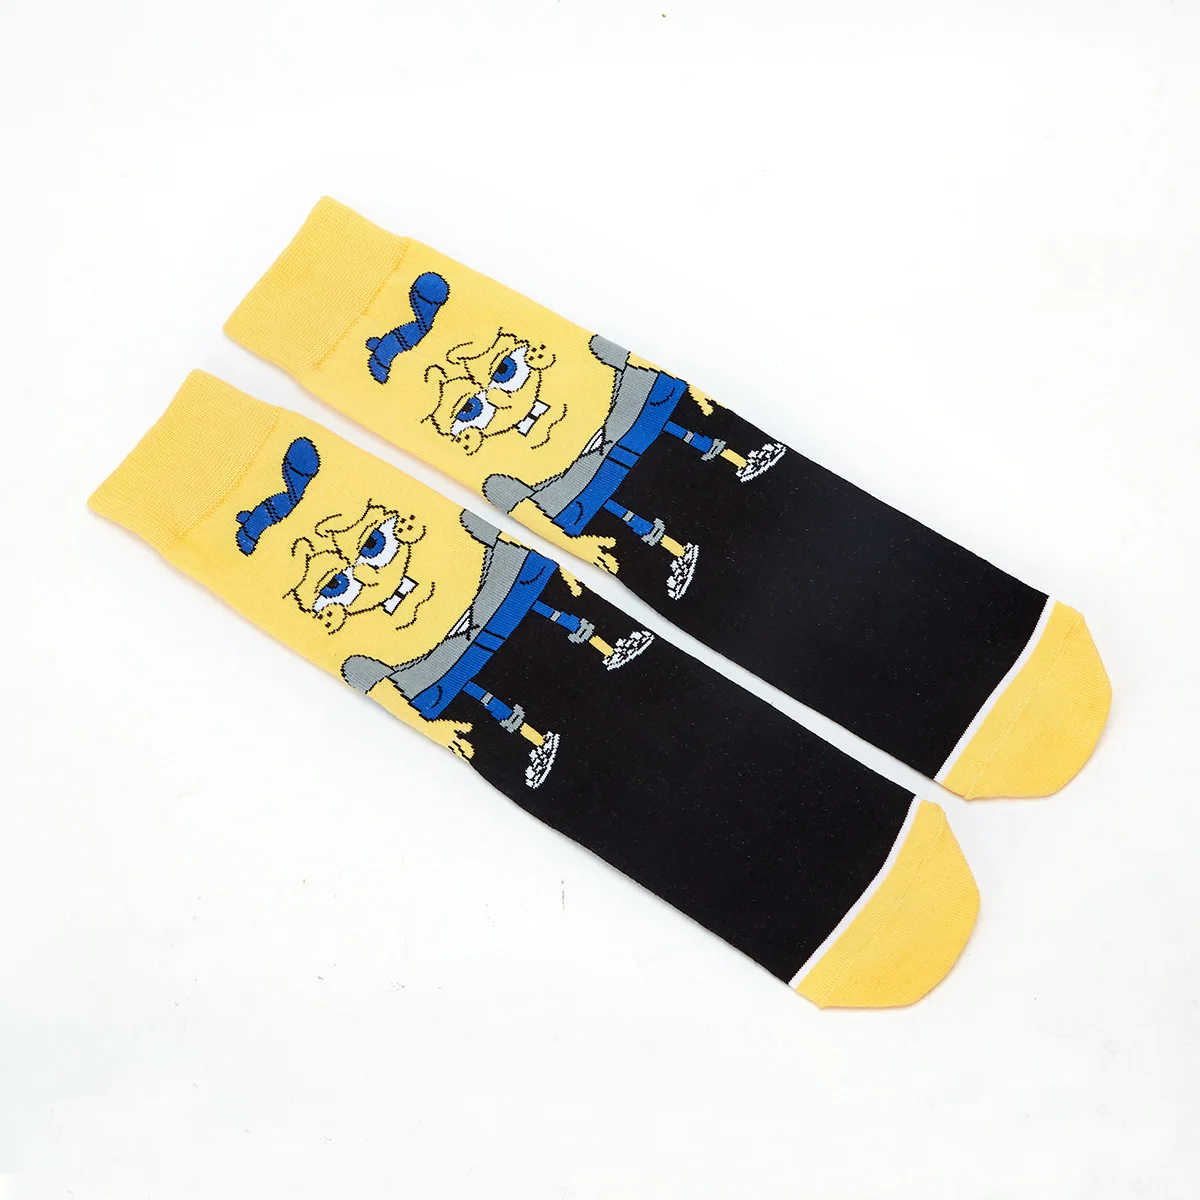 Веселые носки с принтом аниме в стиле Харадзюку; модные носки с забавными рисунками из мультфильмов; яркие удобные хлопковые носки